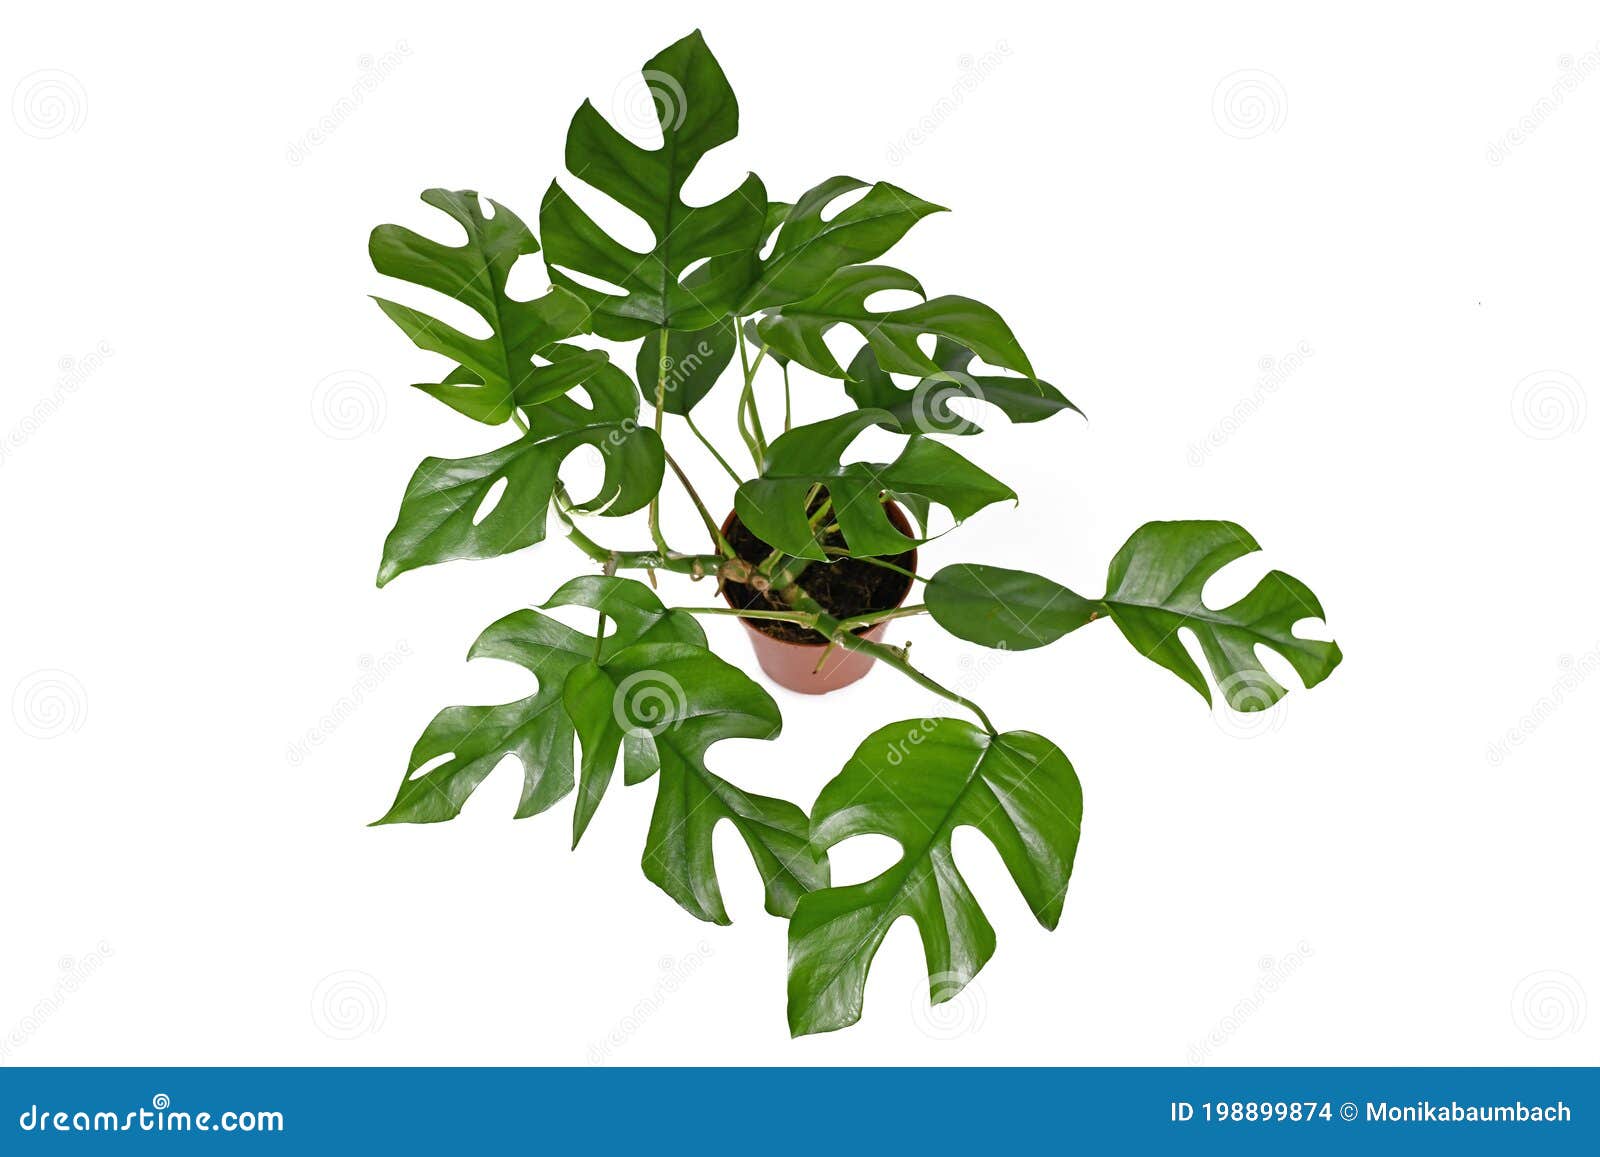 Растение С Крупными Листьями Фото